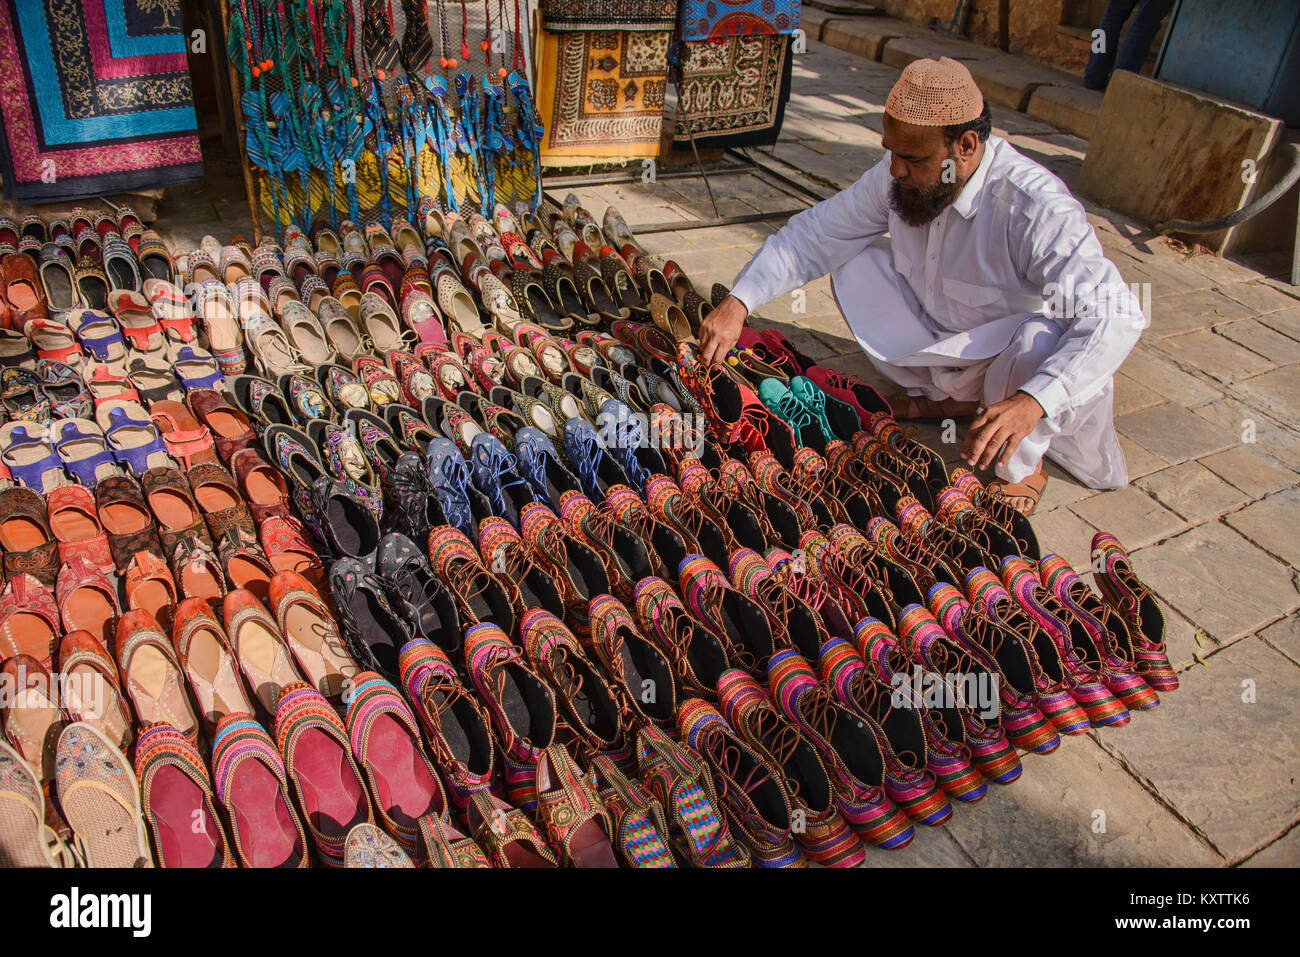 Traditionelle indische Schuhe für den Verkauf in der Straße von Jaipur,  Rajasthan, Indien Stockfotografie - Alamy